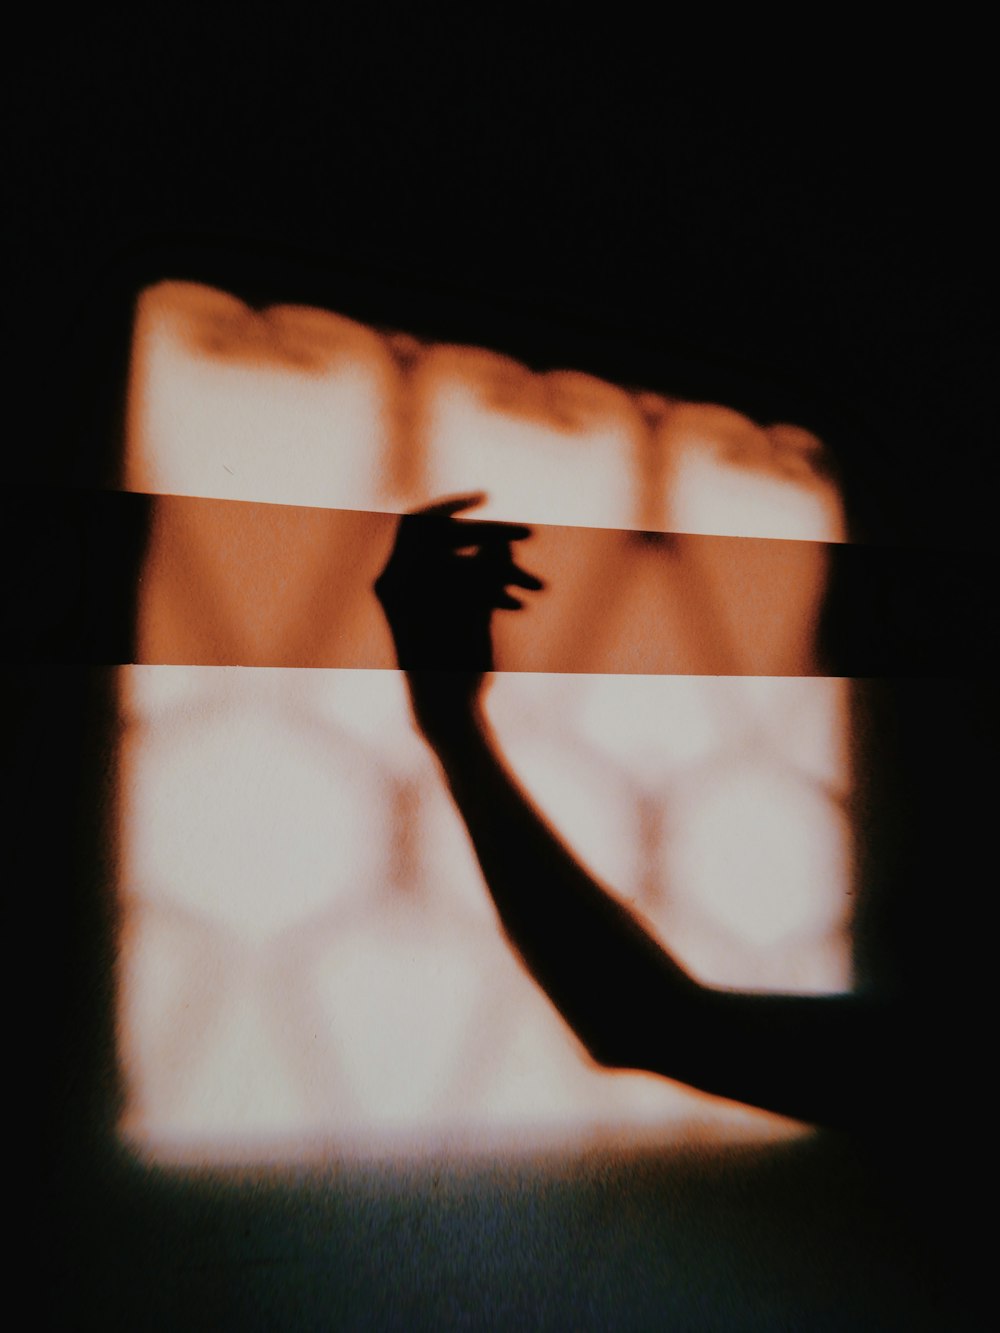 silhouette d’une personne levant la main droite